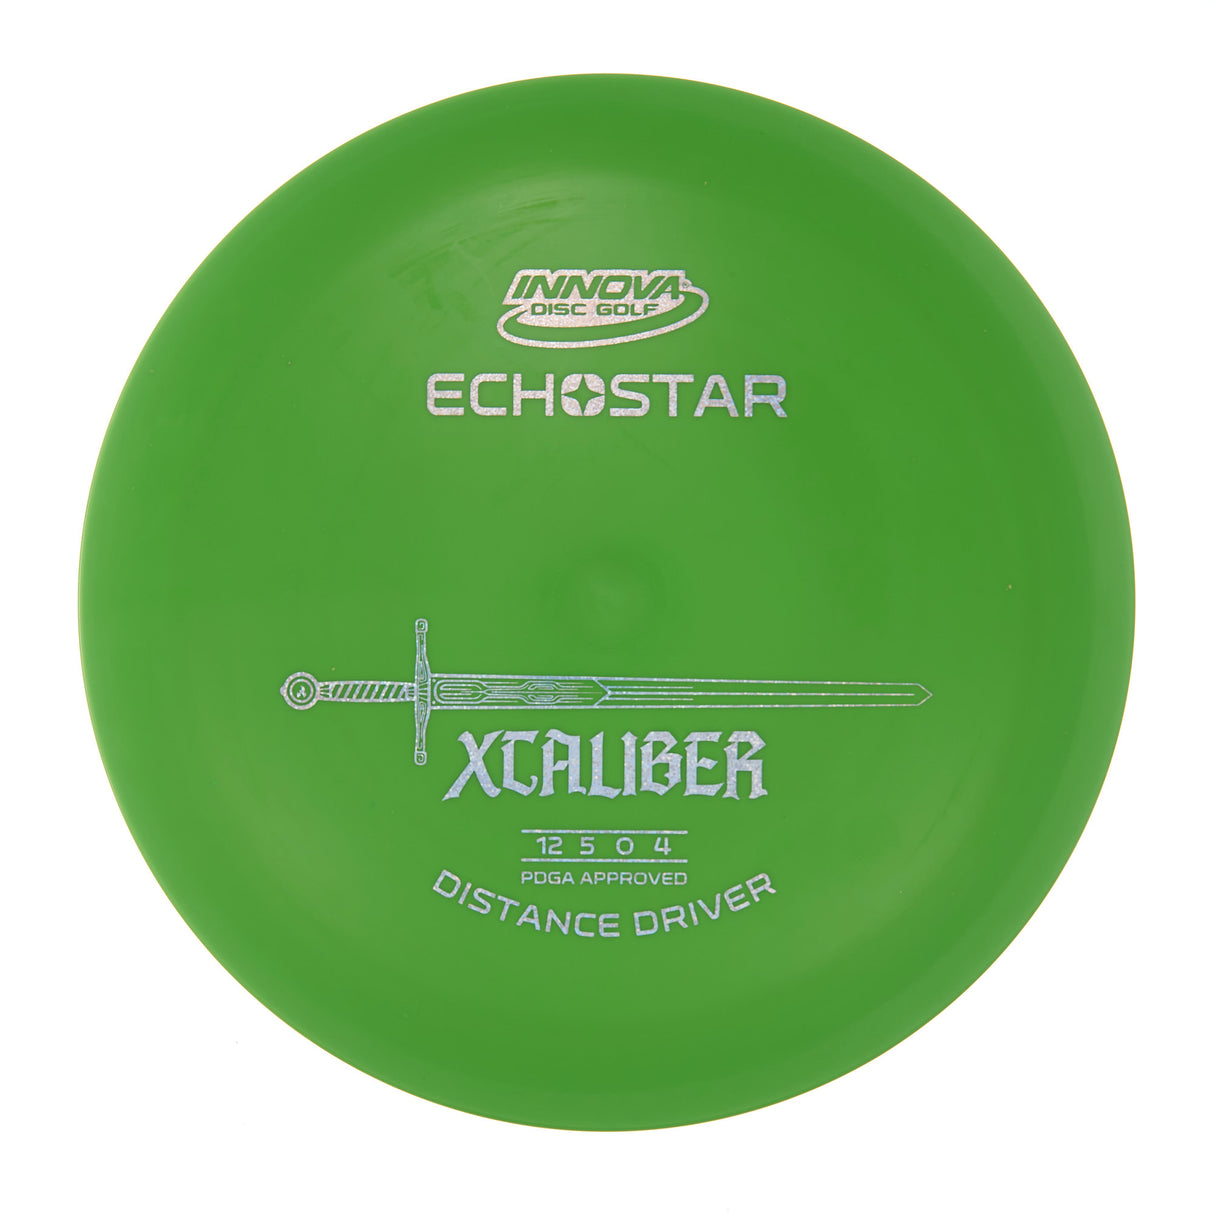 Innova XCaliber - Echo Star  173g | Style 0006